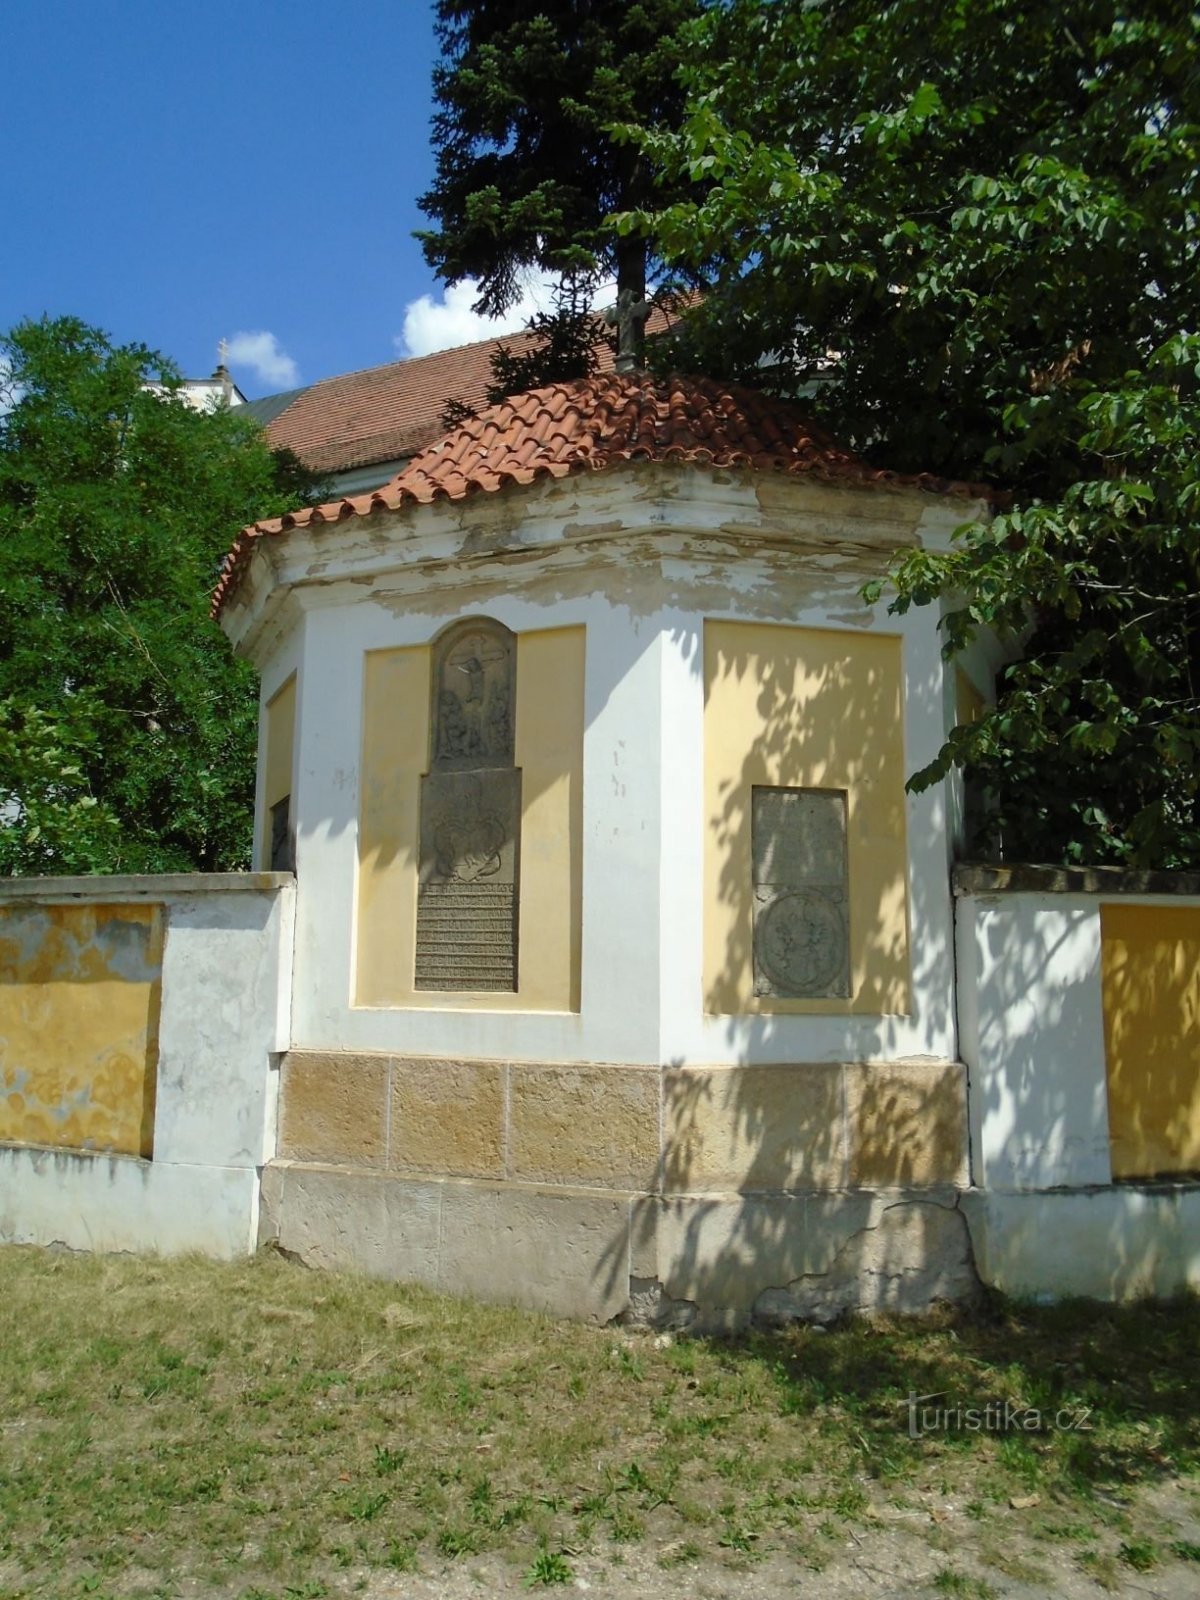 Nhà xác kiểu Baroque trong nghĩa trang cũ (Dobřenice, 21.6.2018/XNUMX/XNUMX)